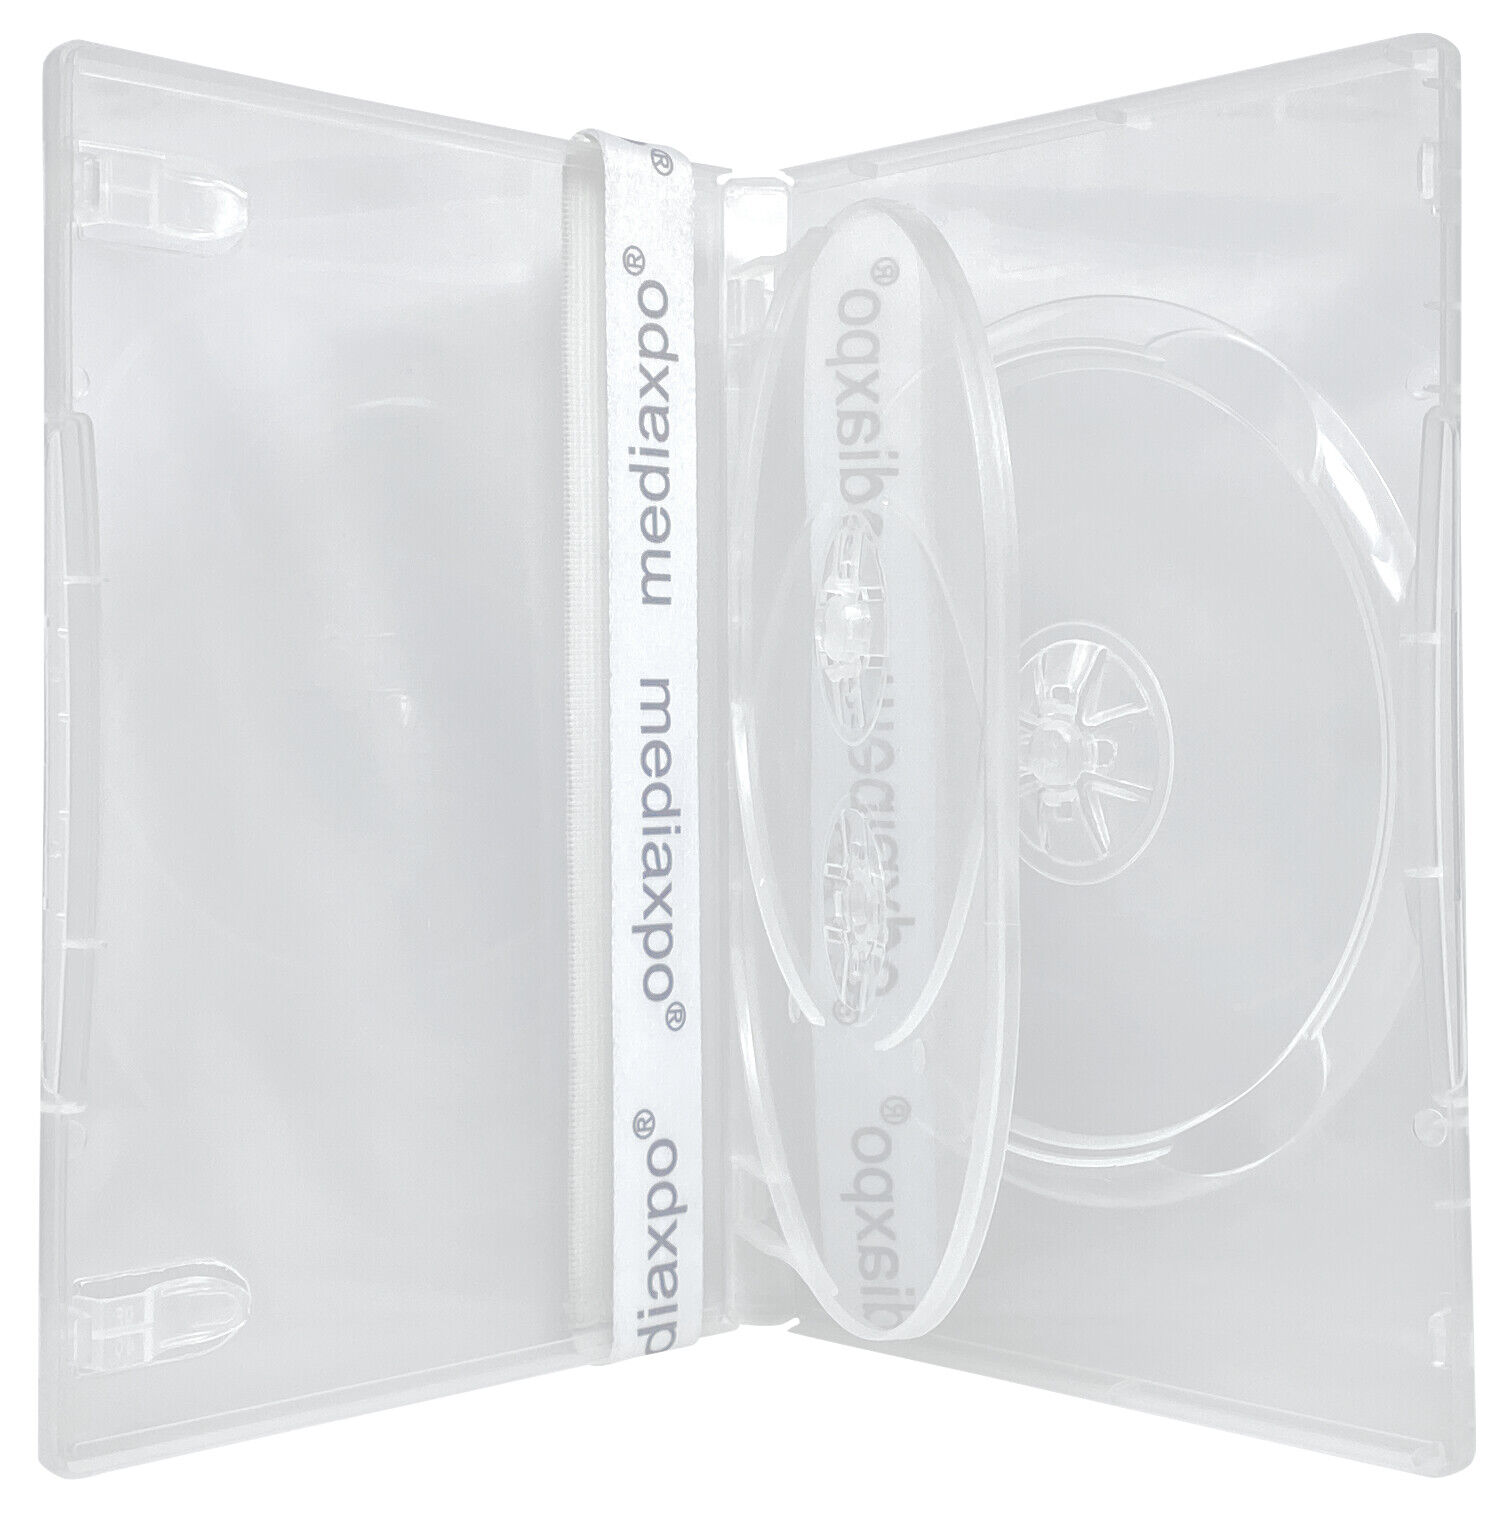 14mm Standard Clear Triple 3 Discs DVD Case Lot